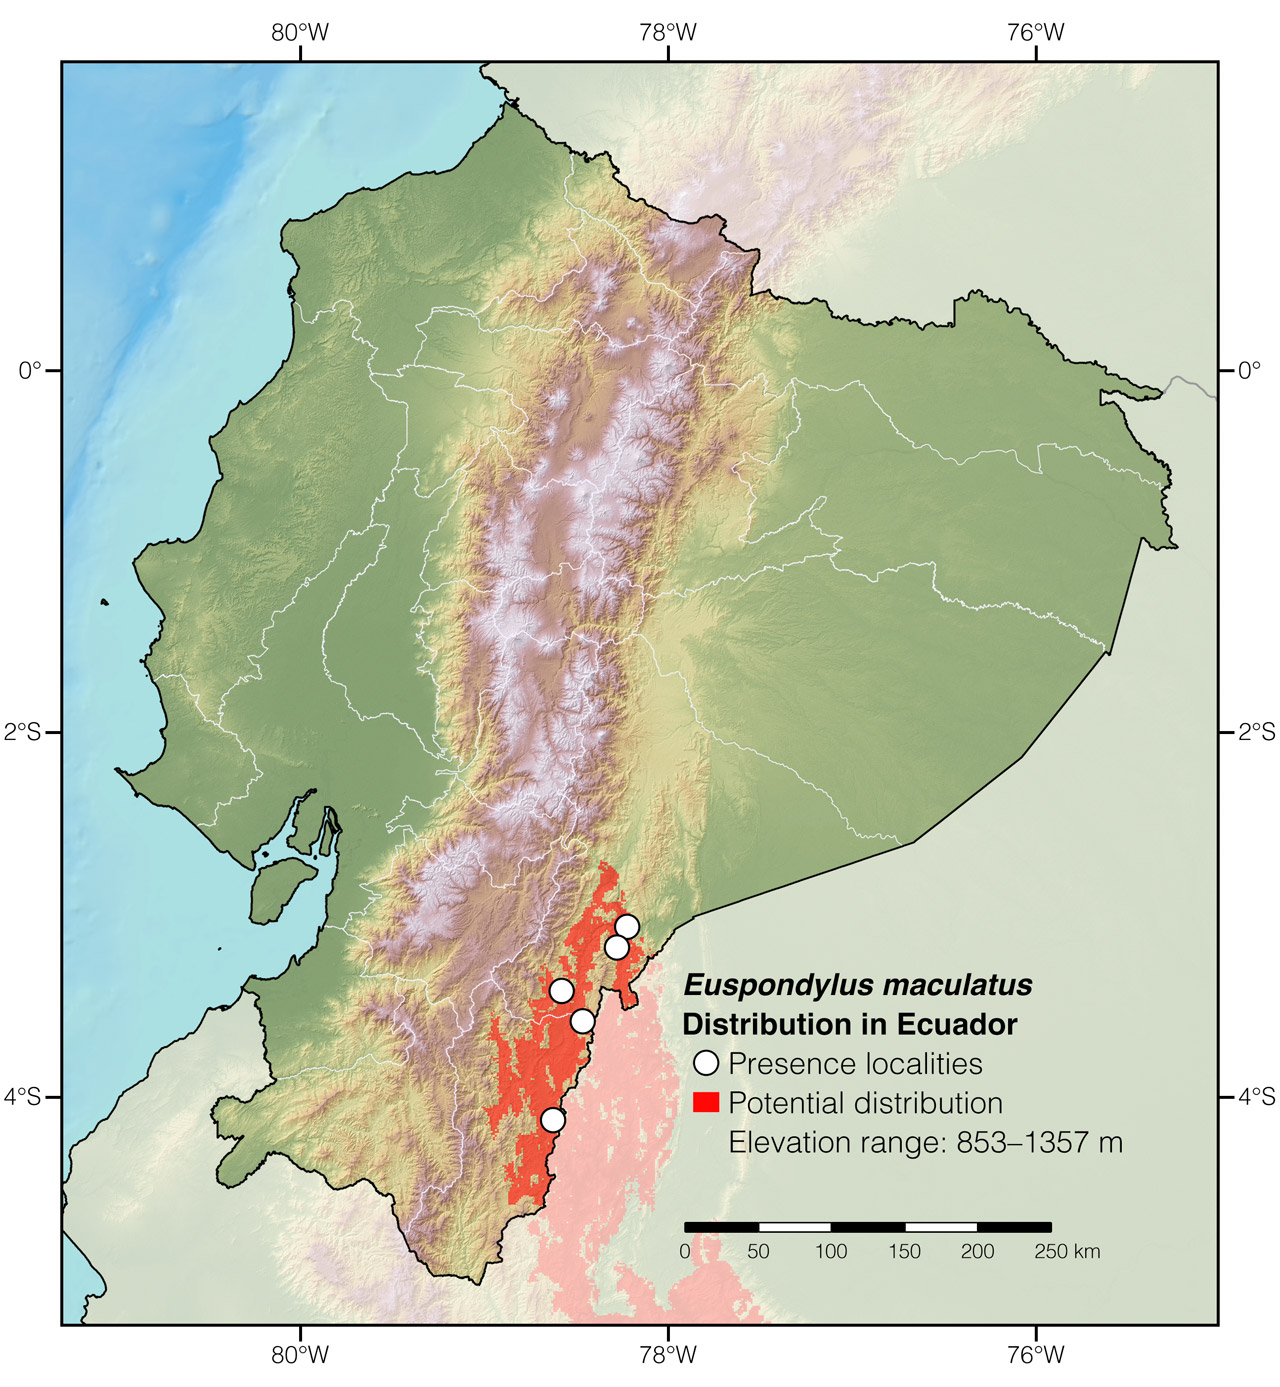 Distribution of Euspondylus maculatus in Ecuador